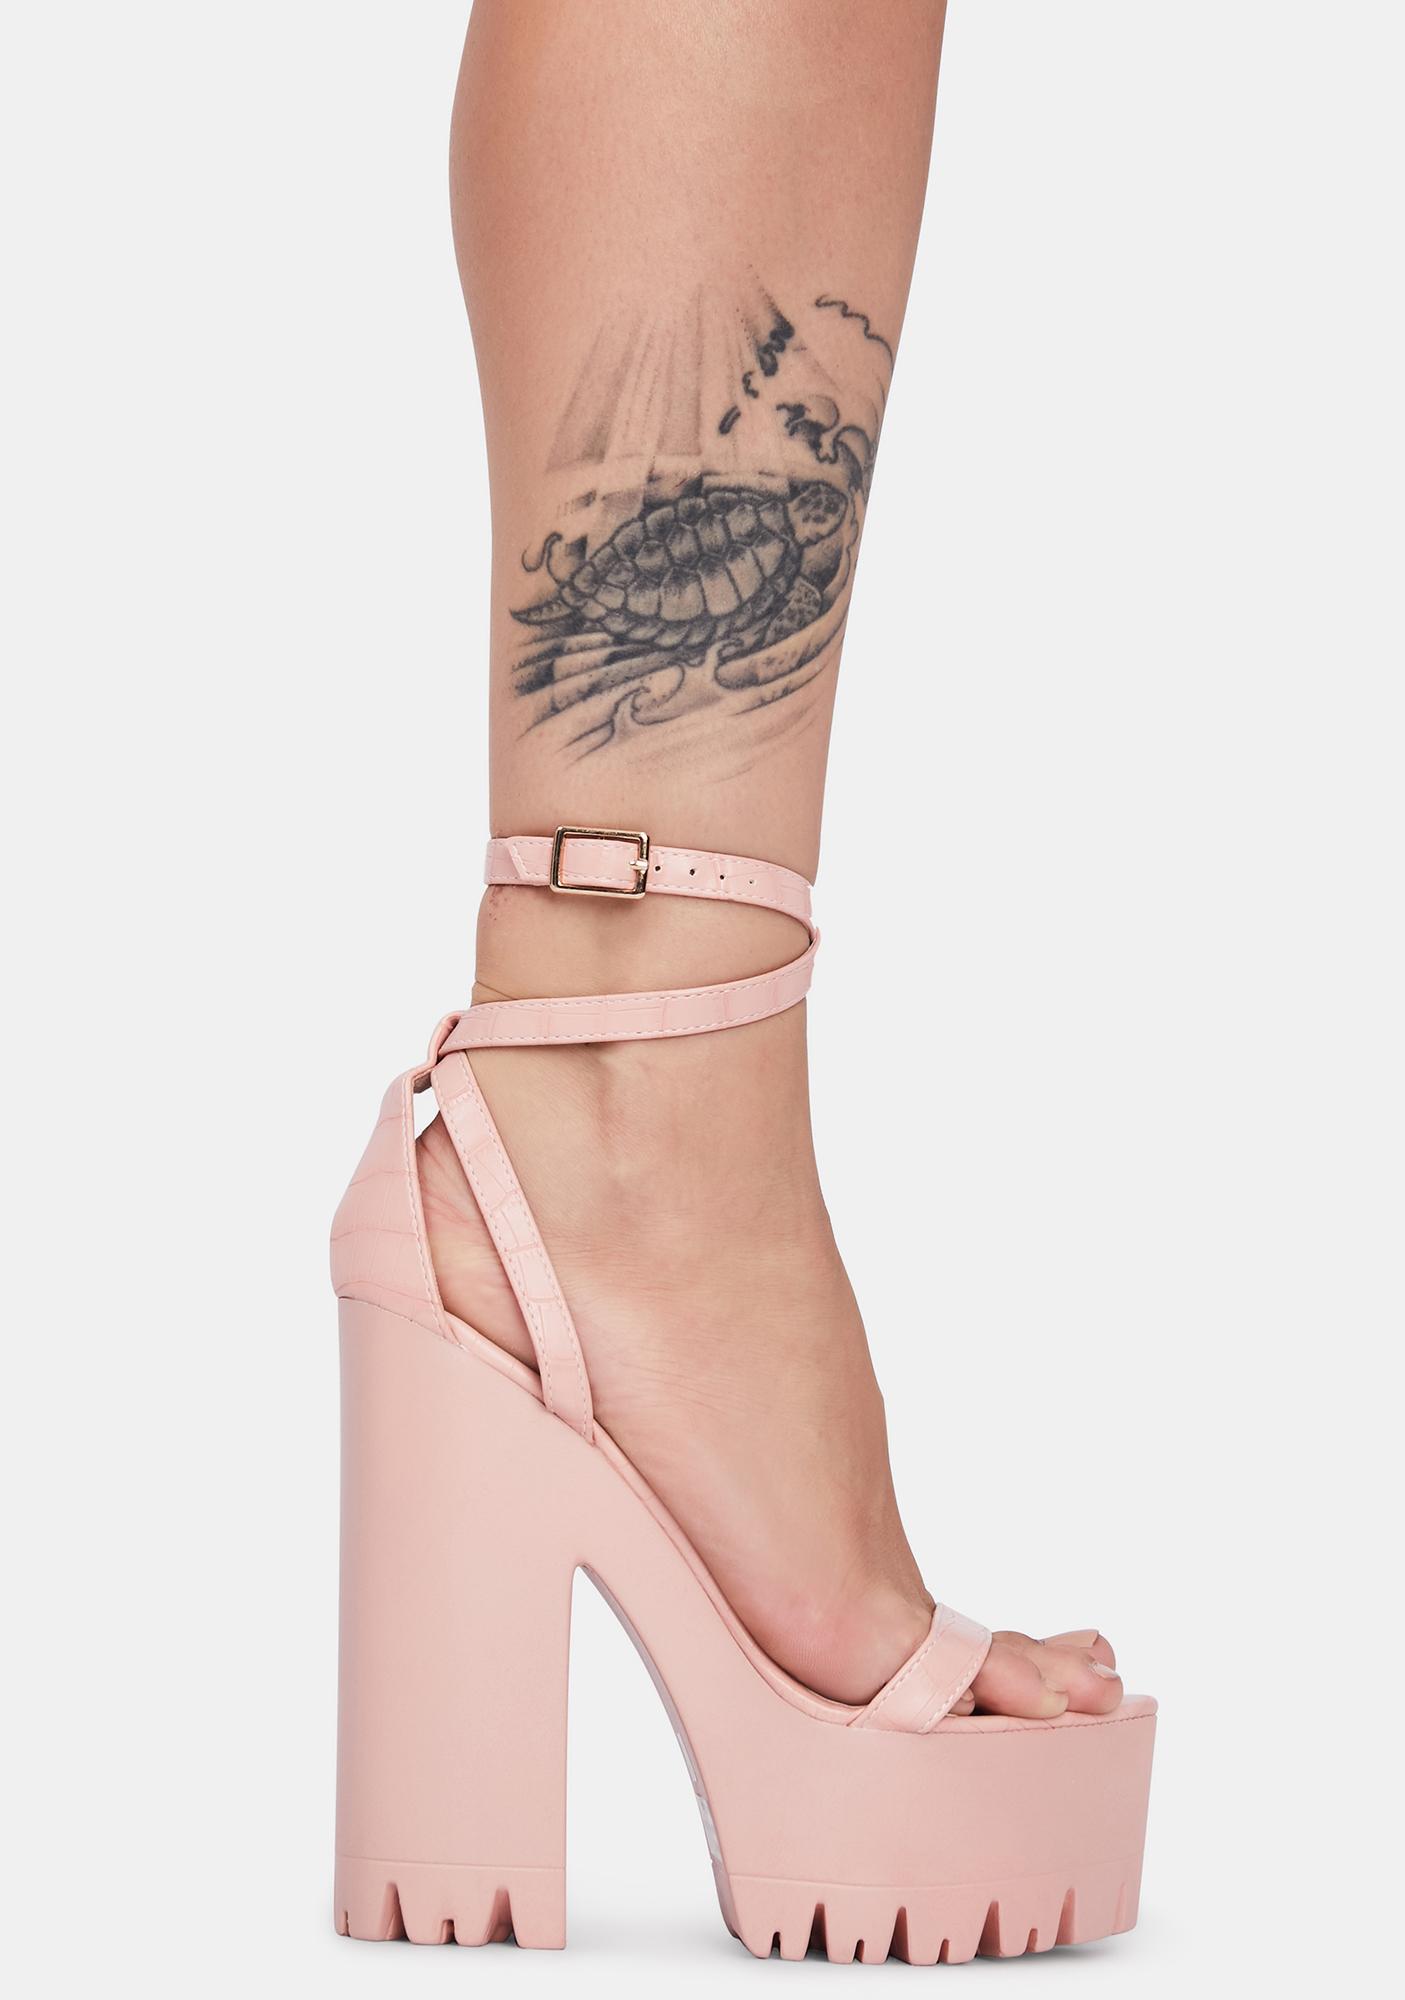 blush pink platform heels